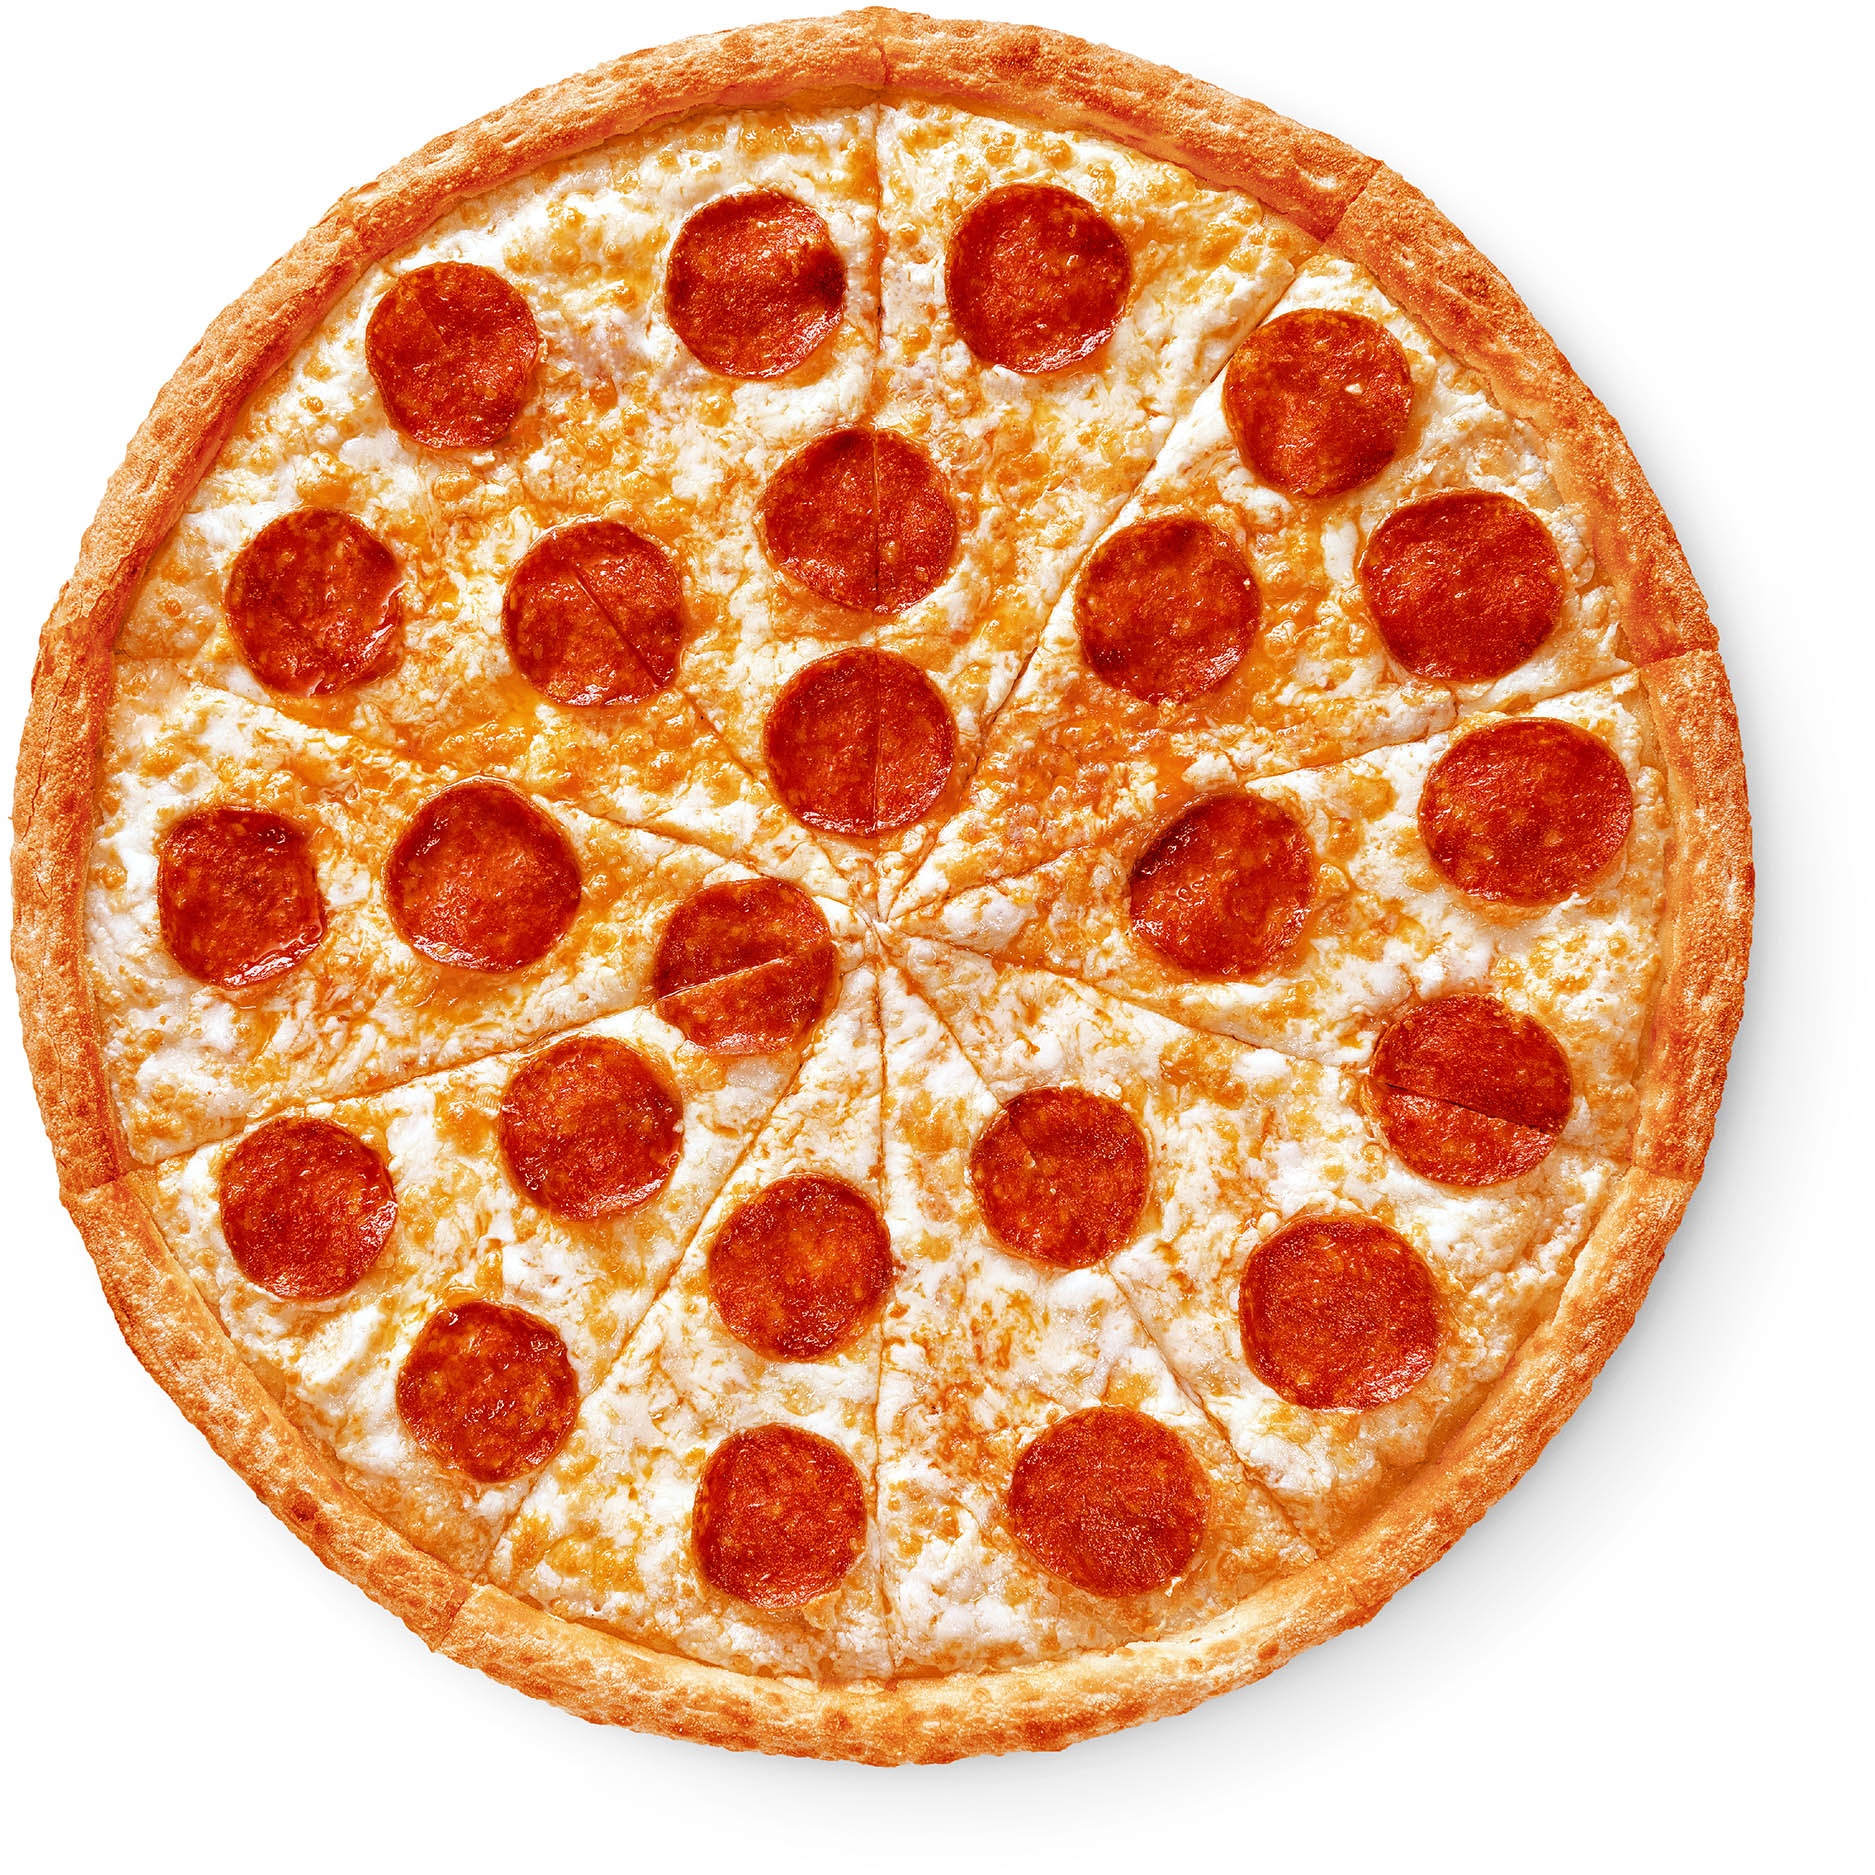 сколько стоит маленькая пицца пепперони в додо пицца фото 6